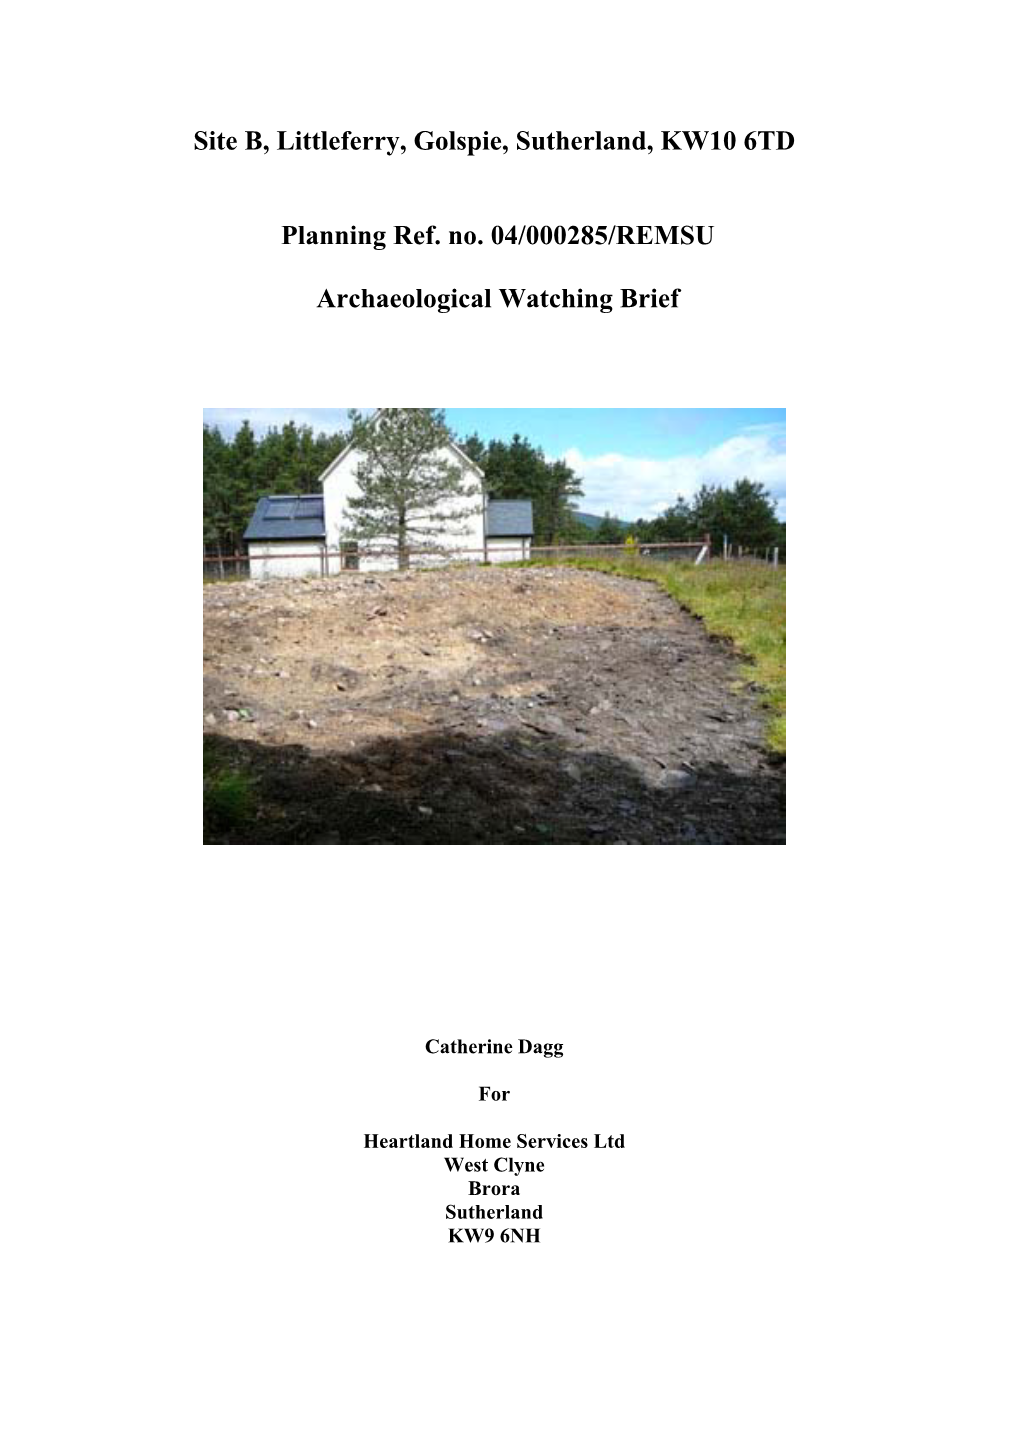 Site B, Littleferry, Golspie, Sutherland, KW10 6TD Planning Ref. No. 04